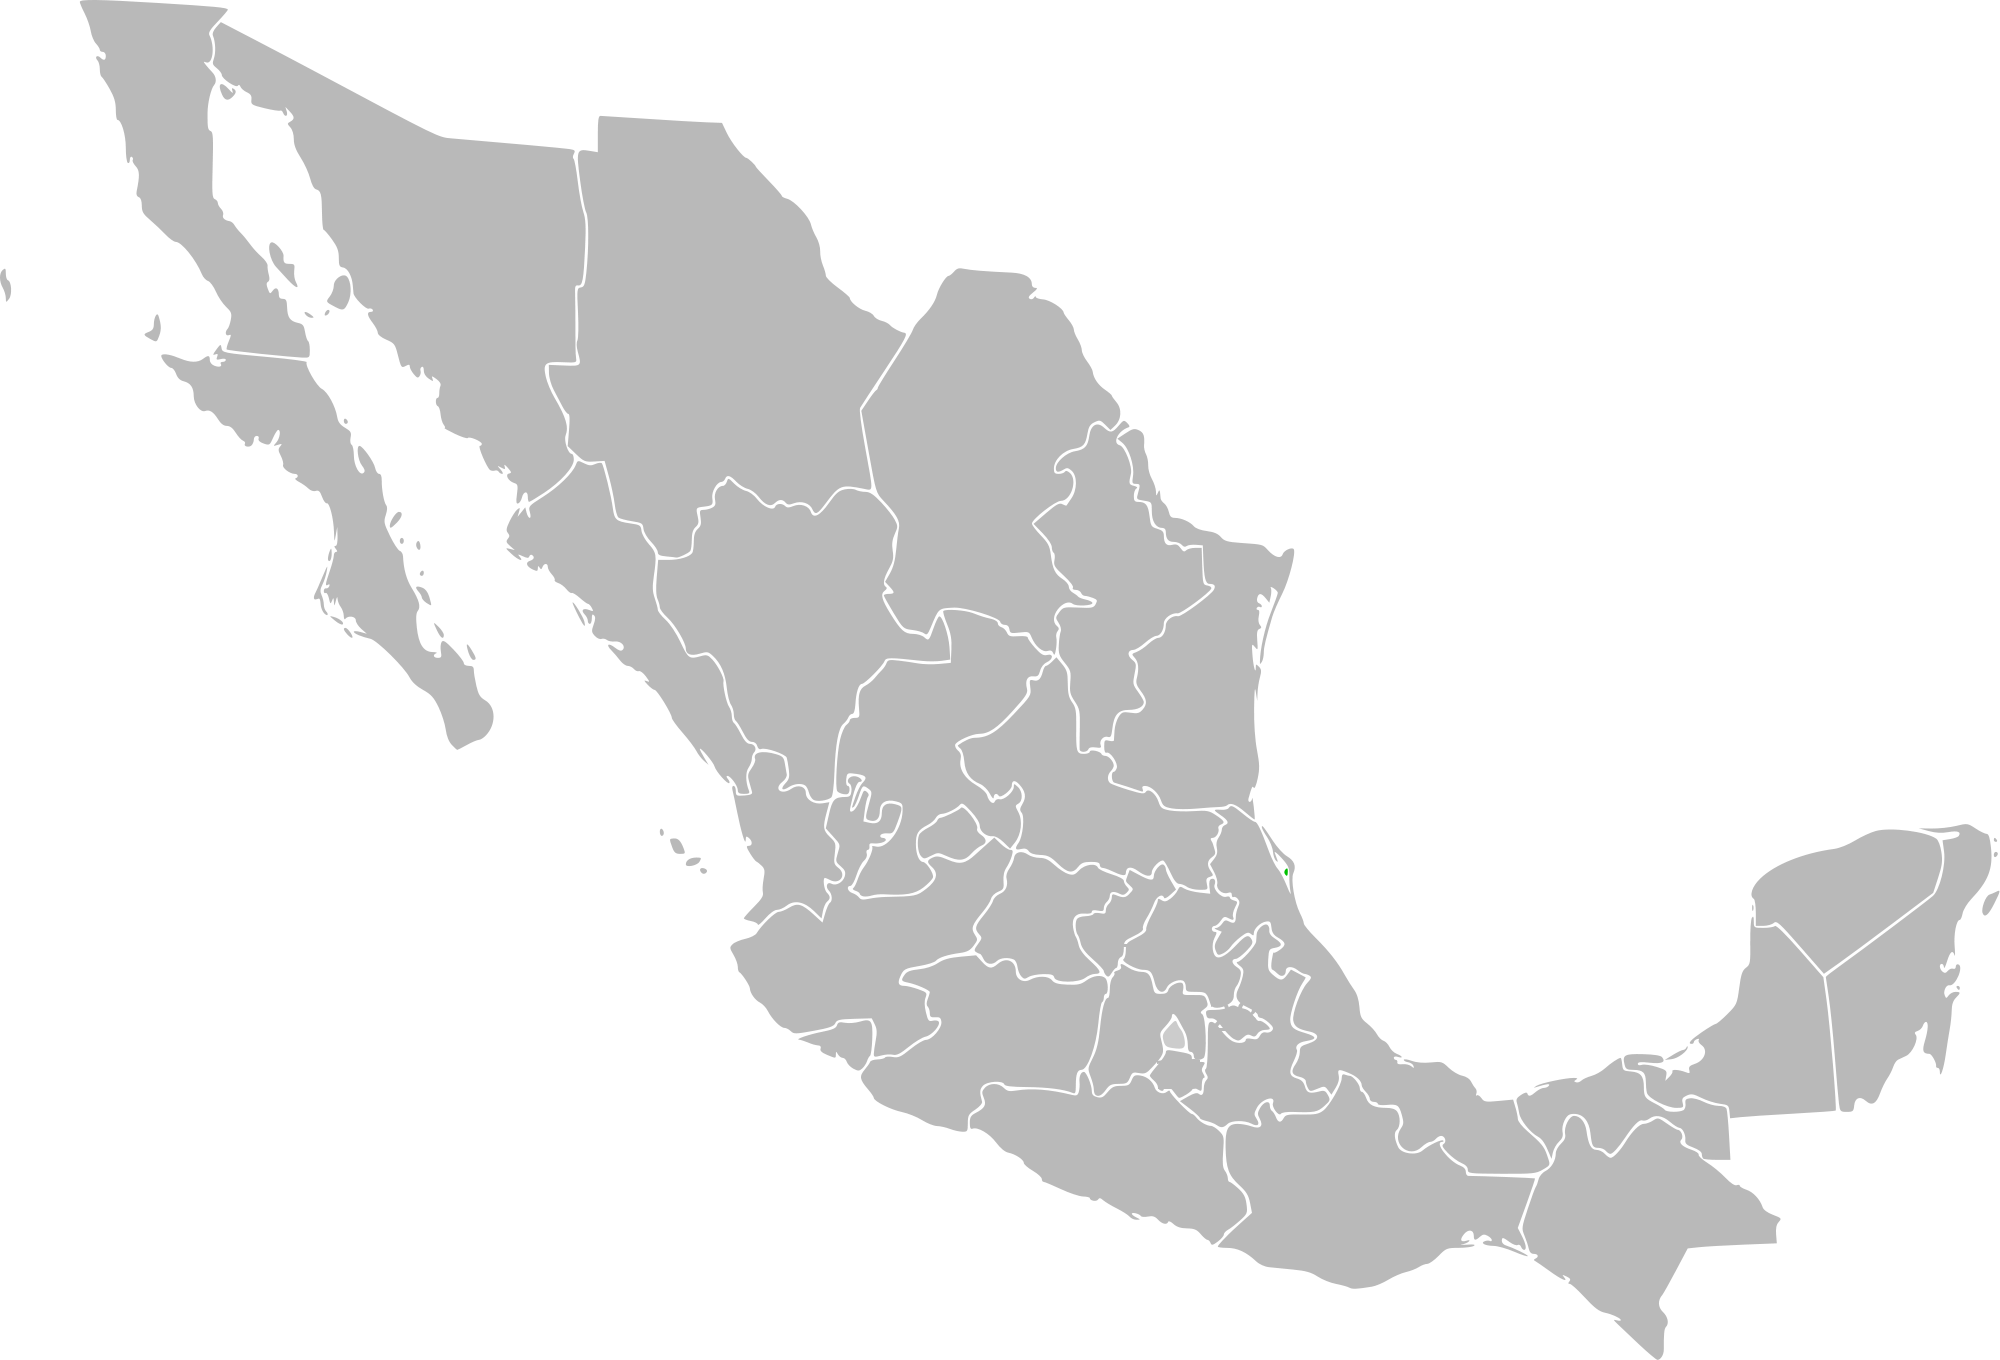 File:Flag of Mexico (1934u201